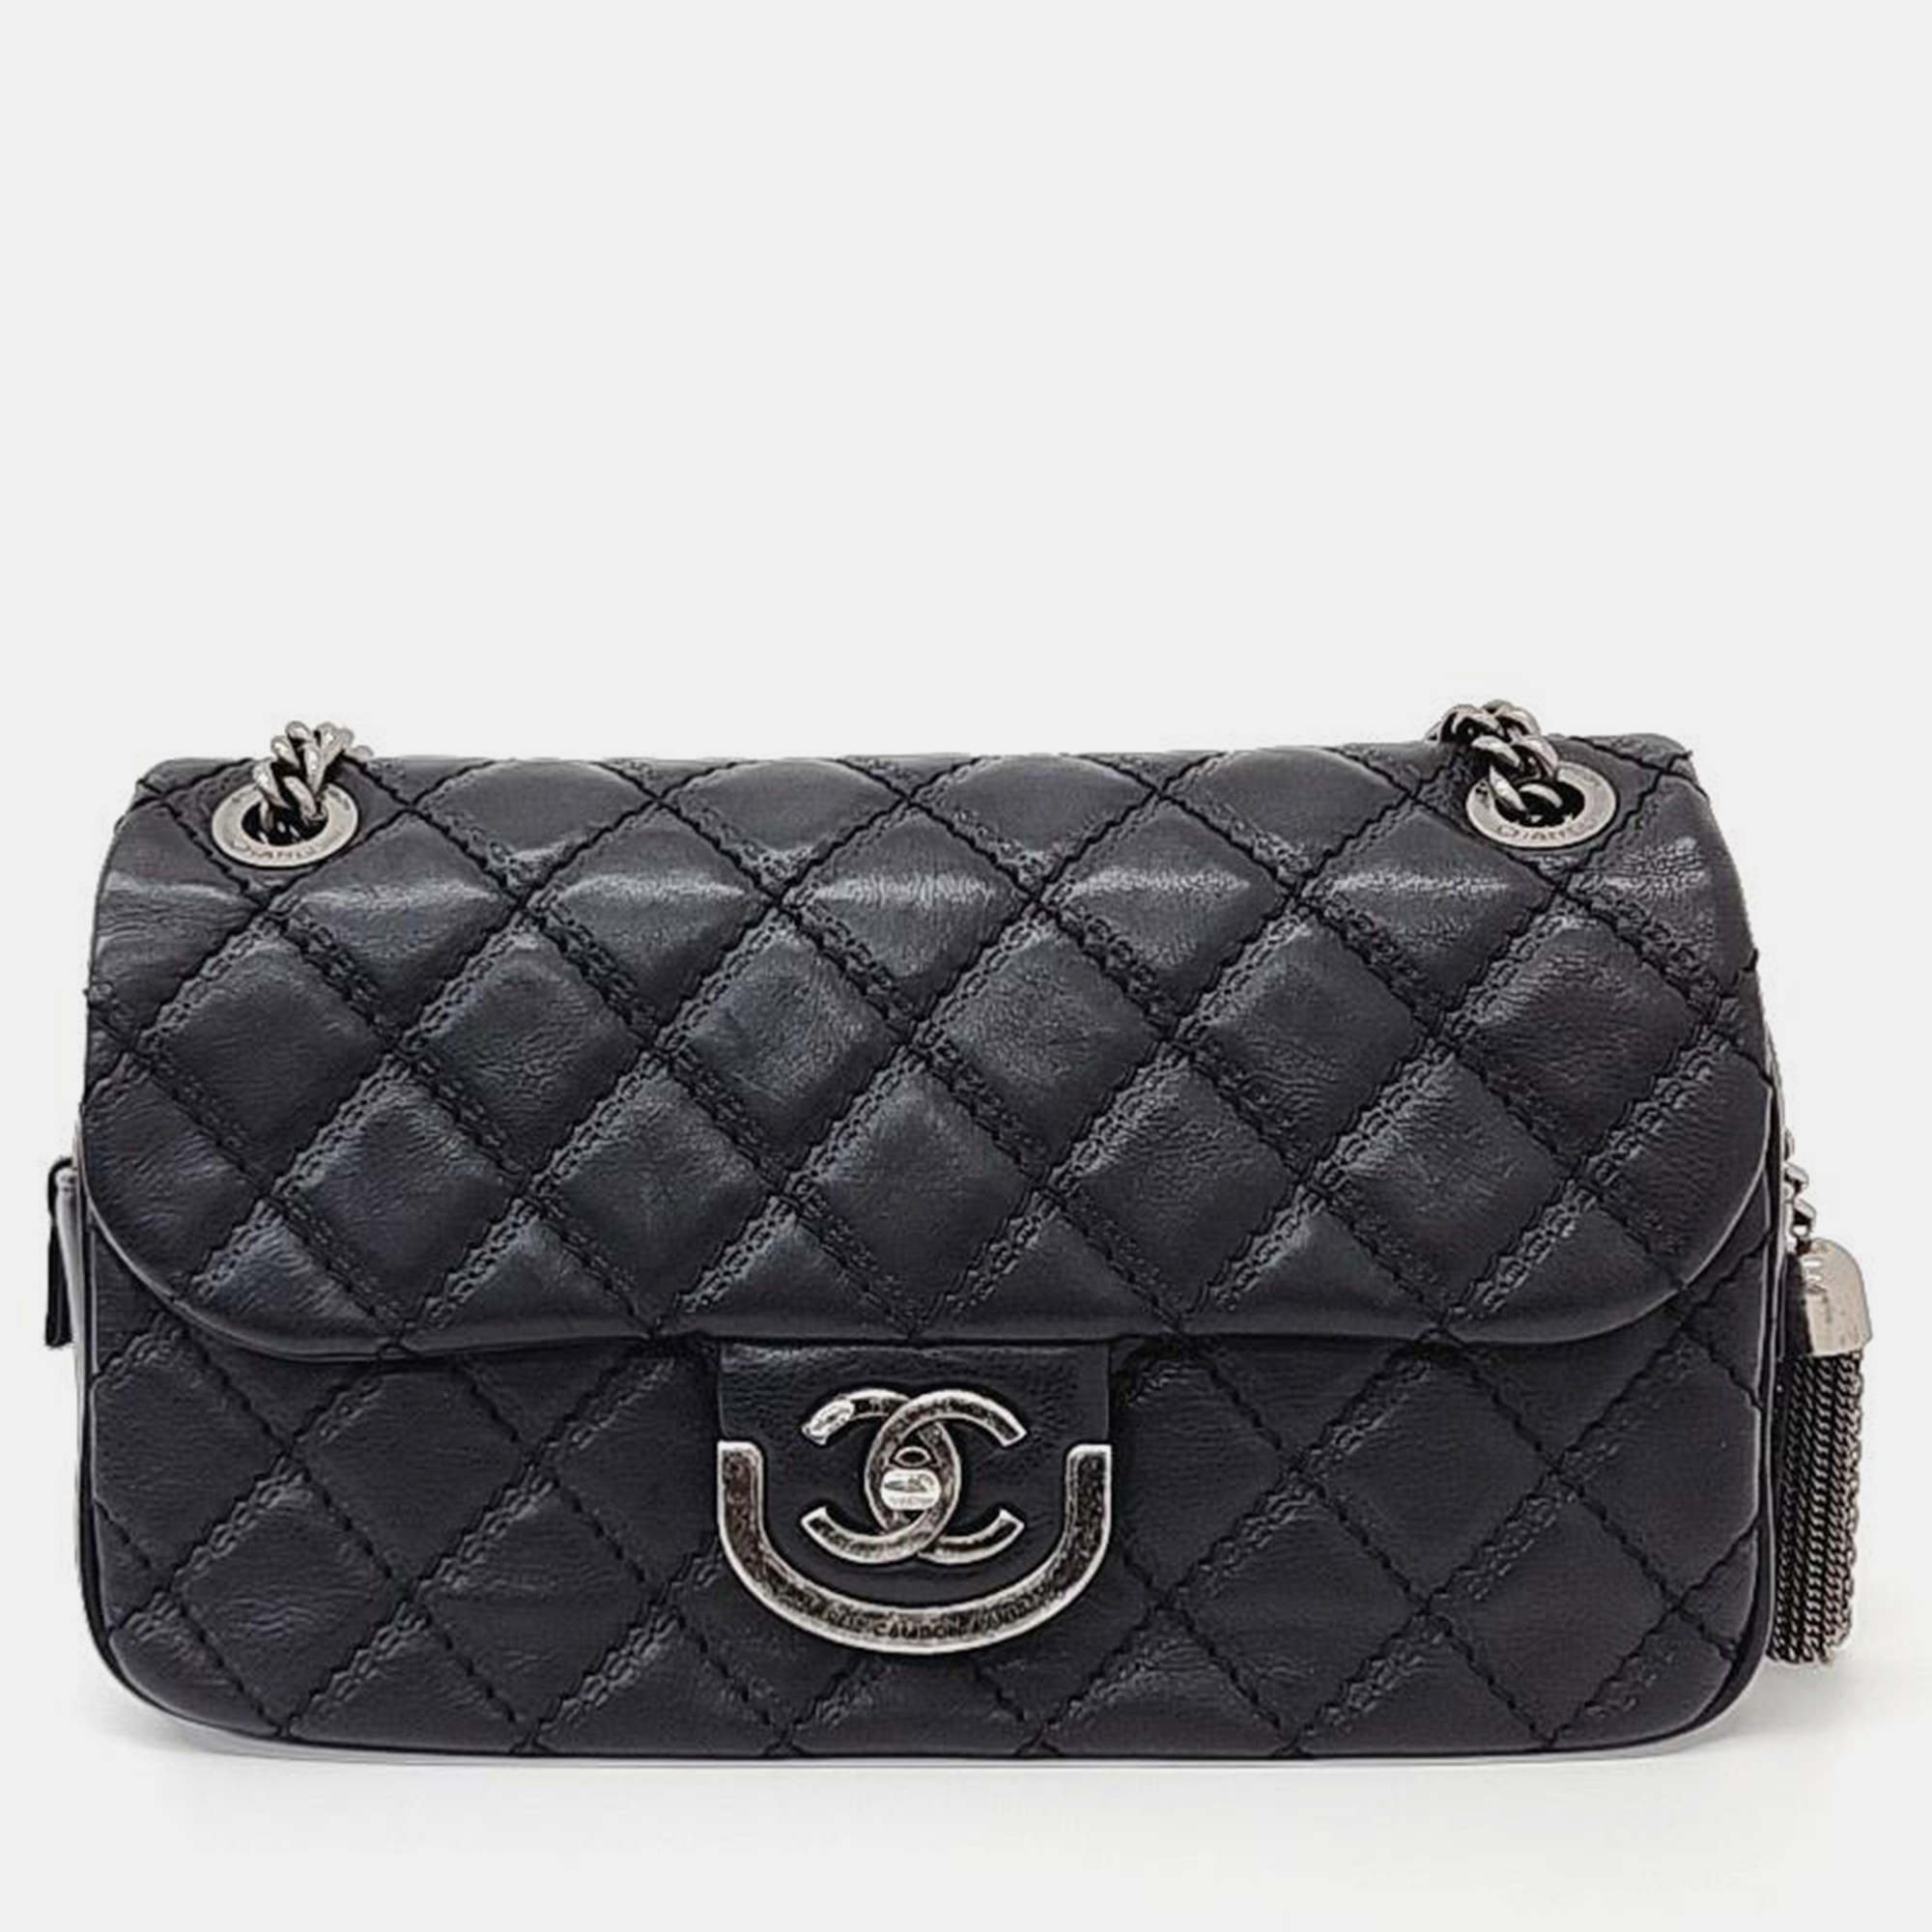 Chanel Leather Black Chain Shoulder Bag